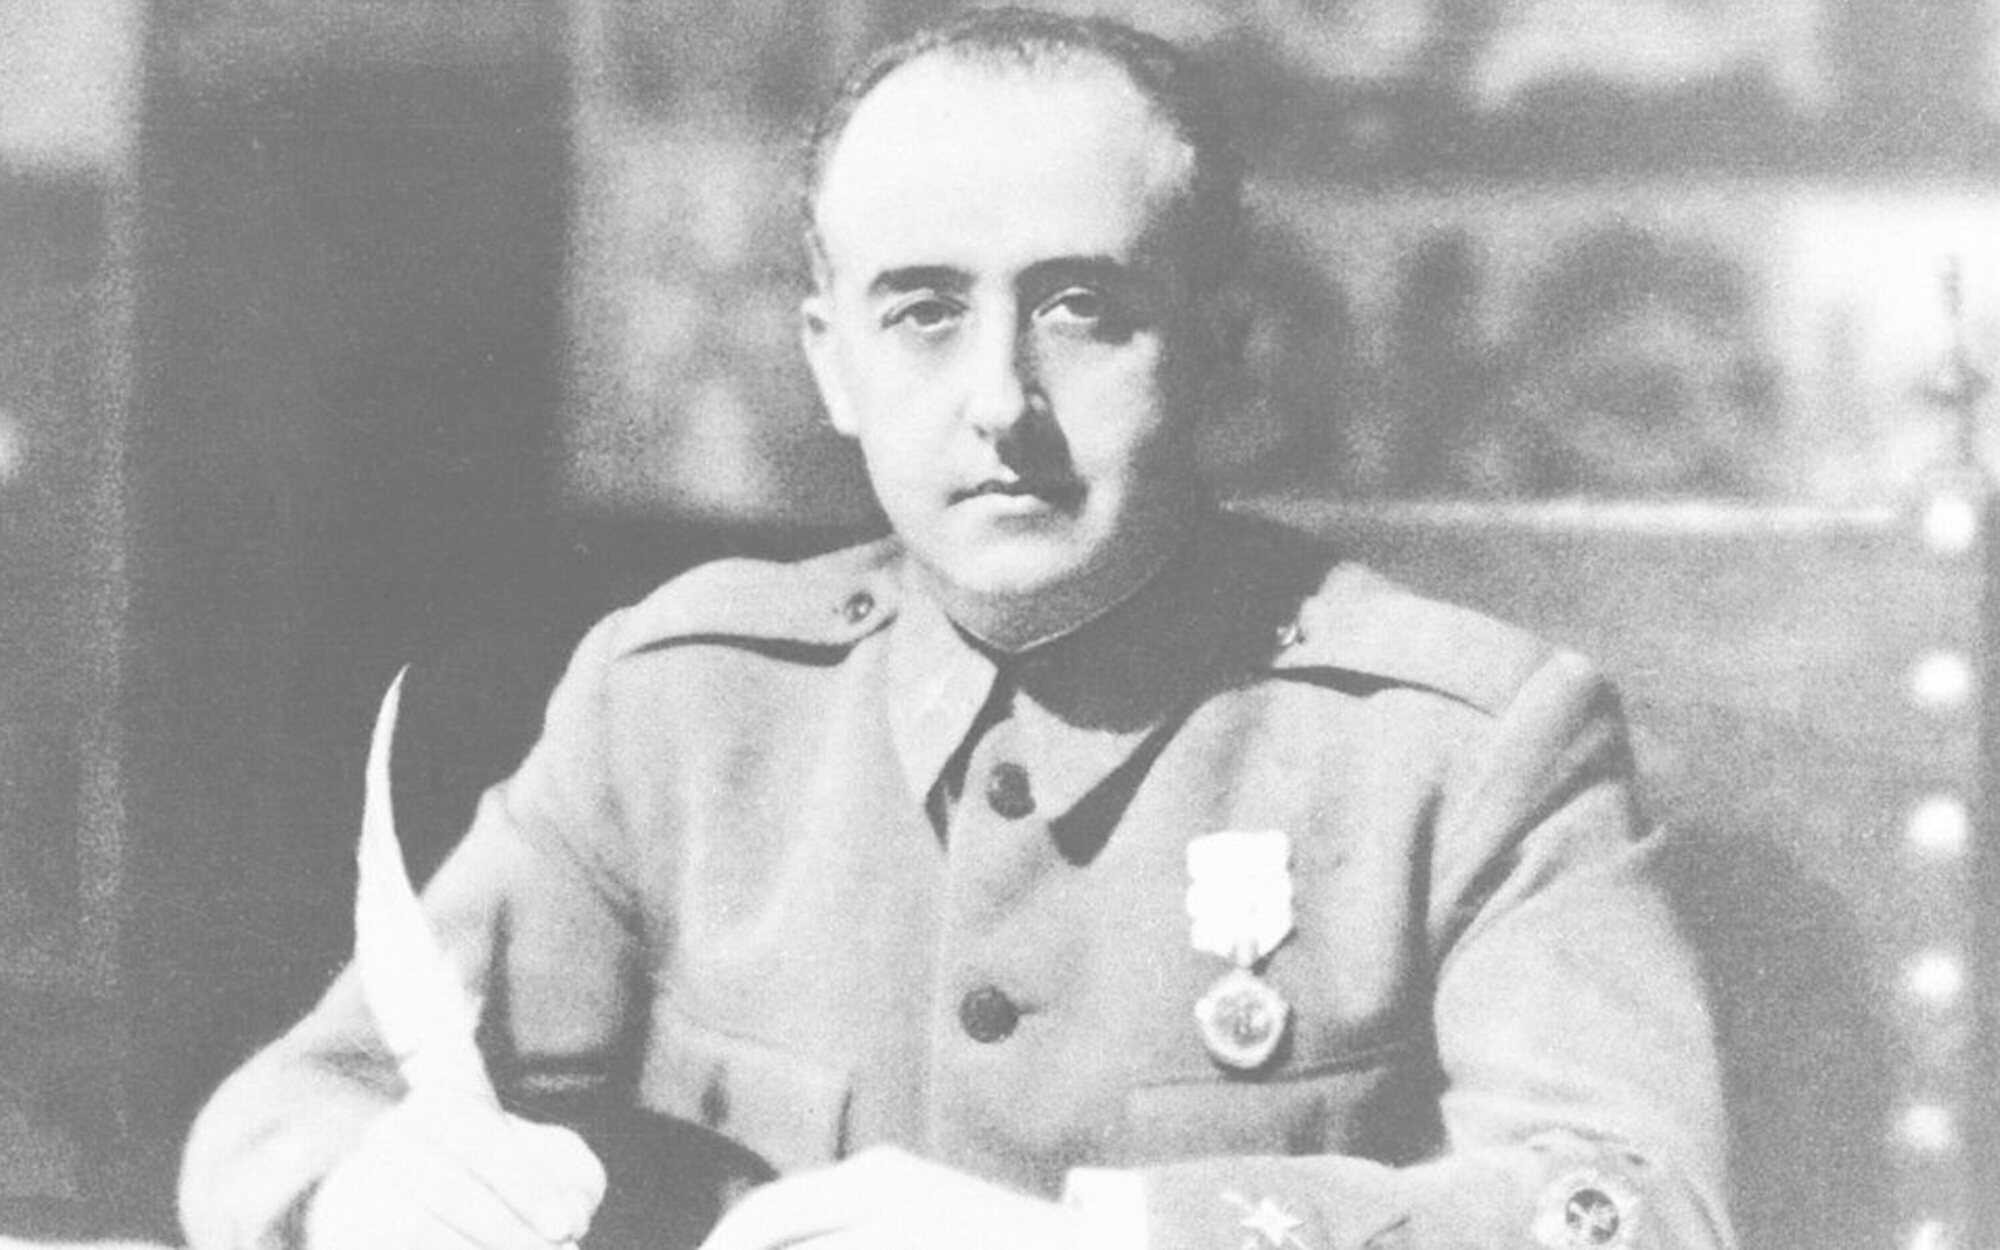 Mediapro prepara una serie de ficción sobre el dictador Francisco Franco